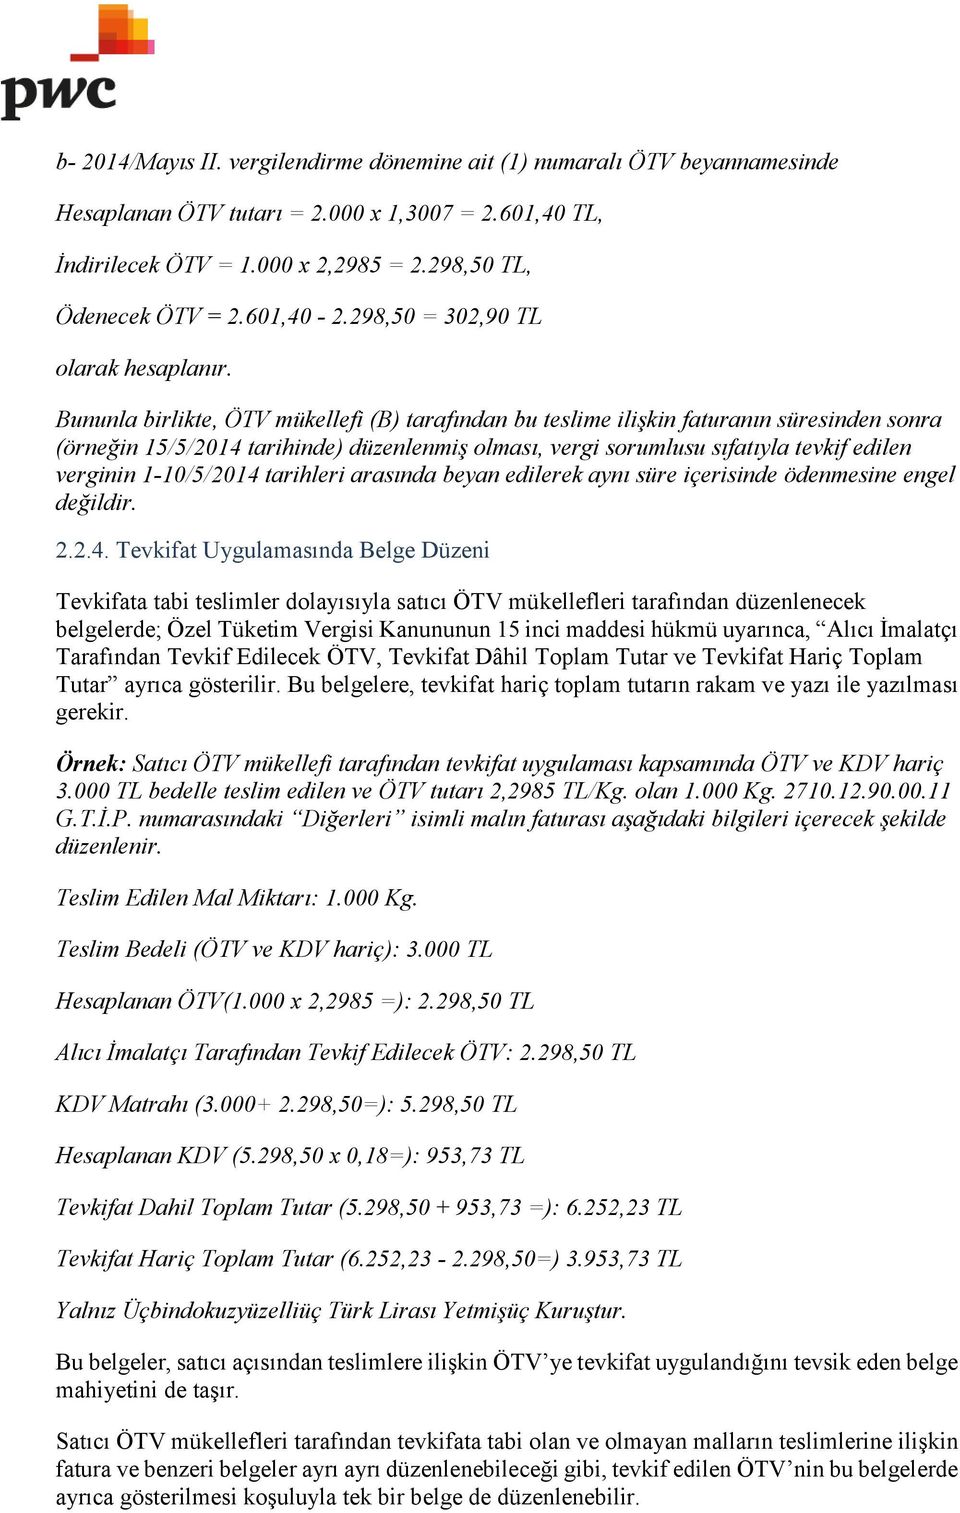 Bununla birlikte, ÖTV mükellefi (B) tarafından bu teslime ilişkin faturanın süresinden sonra (örneğin 15/5/2014 tarihinde) düzenlenmiş olması, vergi sorumlusu sıfatıyla tevkif edilen verginin